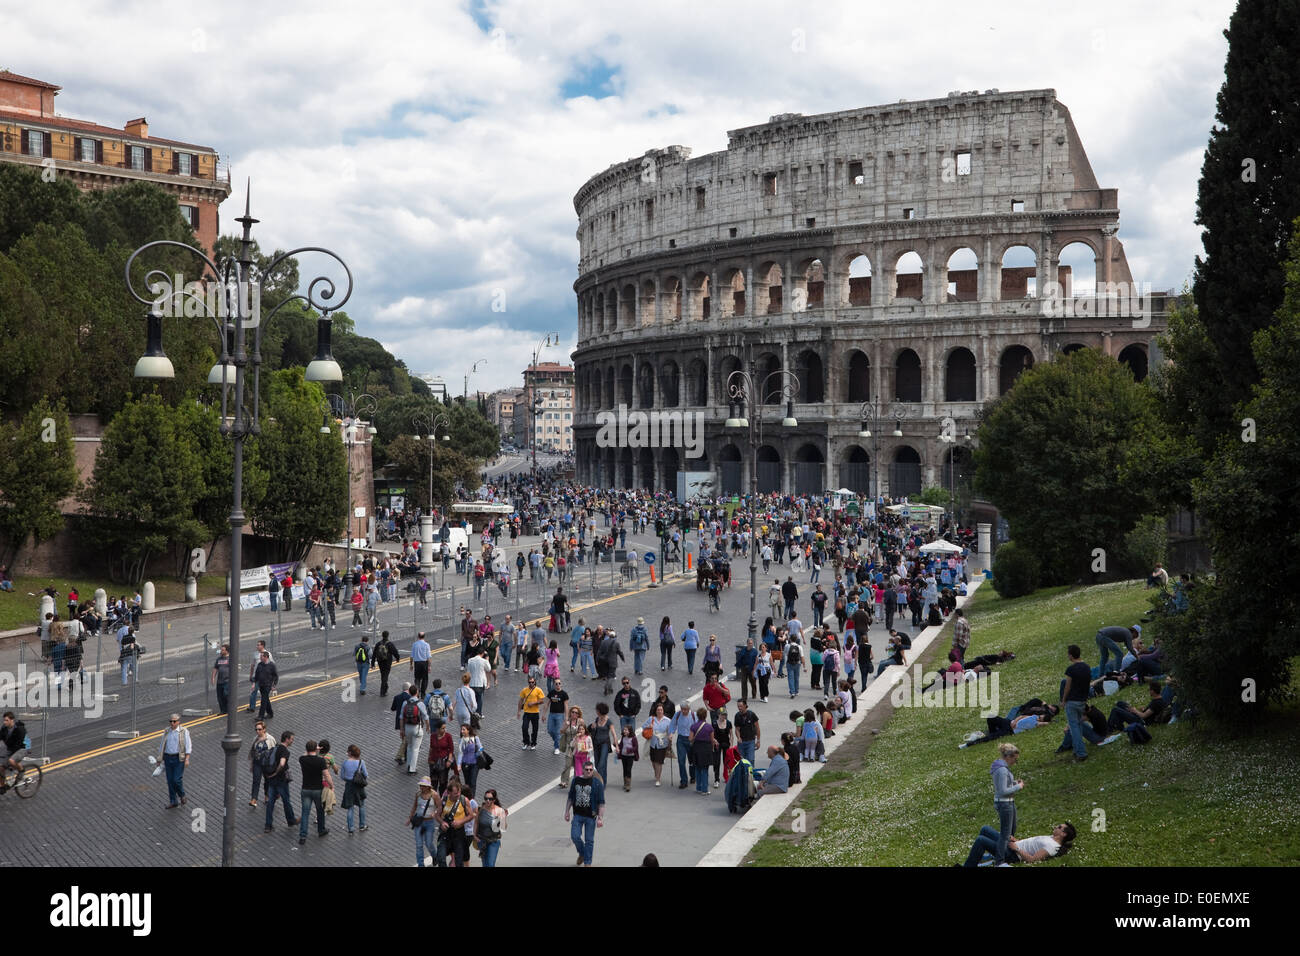 Kolosseum, Rom, Italien - Colosseum, Rome, Italy Stock Photo